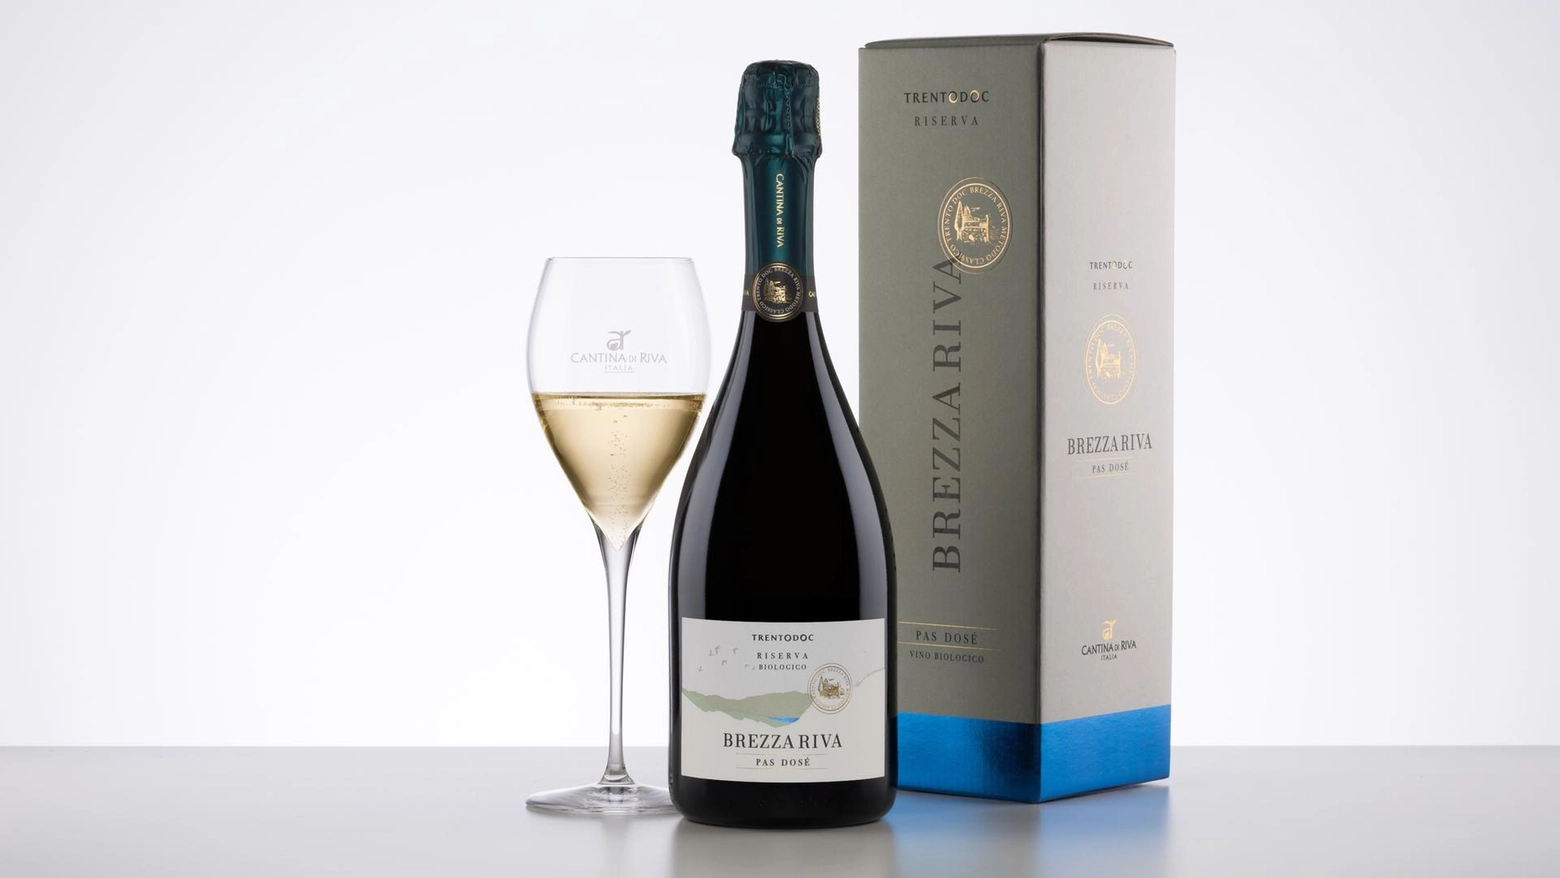 Il packaging ideato dal wine designer e fotografo Mario Di Paolo sottolinea il forte legame della cantina con il lago di Garda